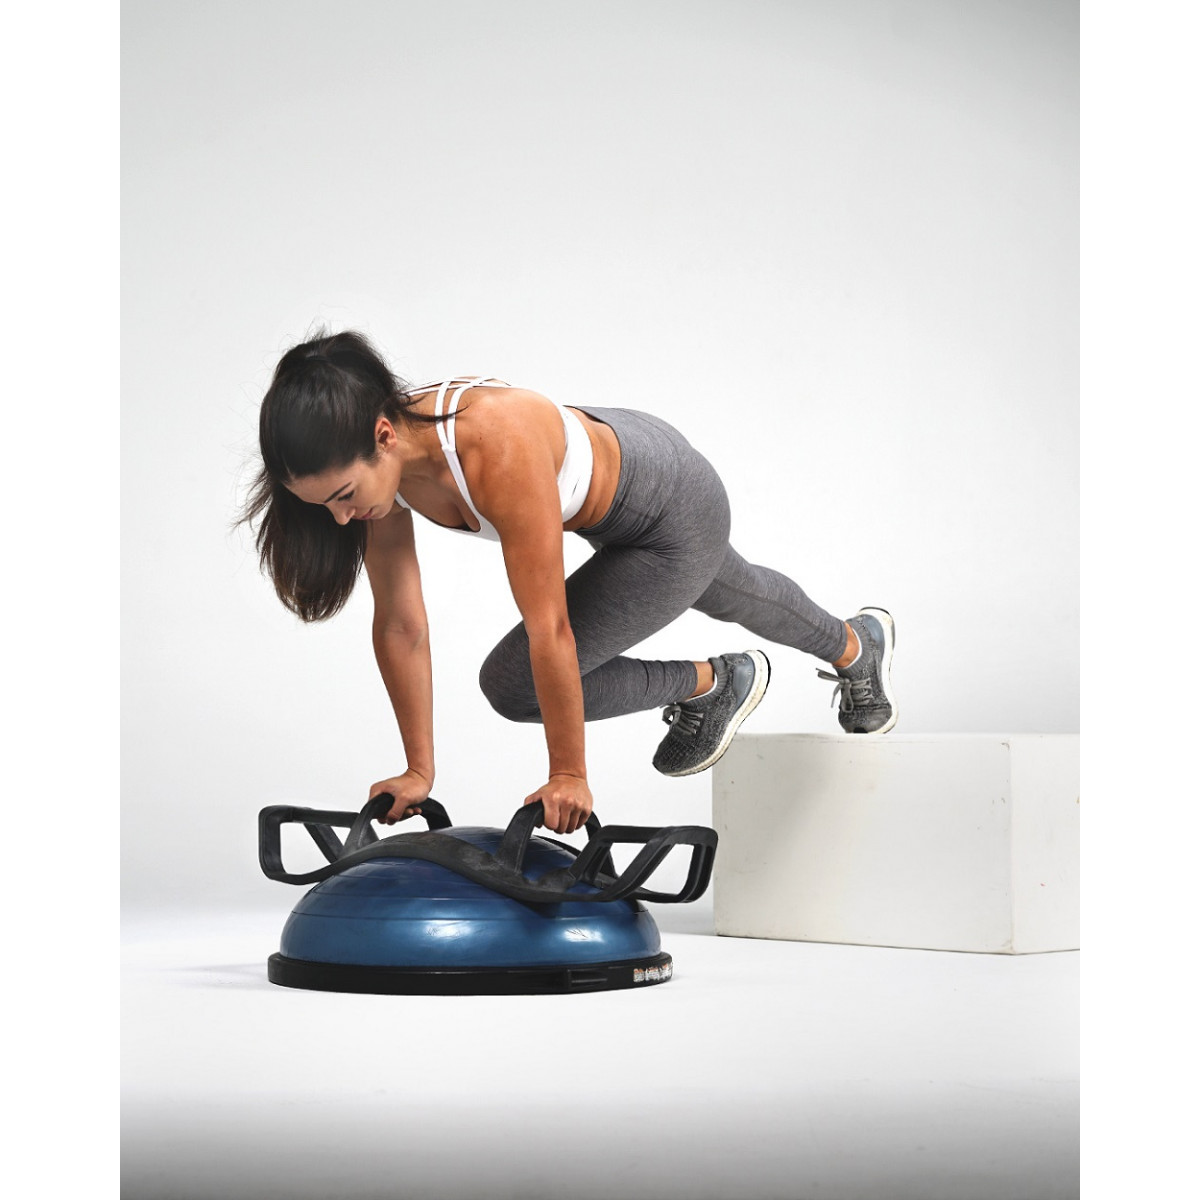 BOSU® Balance Pods  The All-New Mini BOSU Balance Training Product 